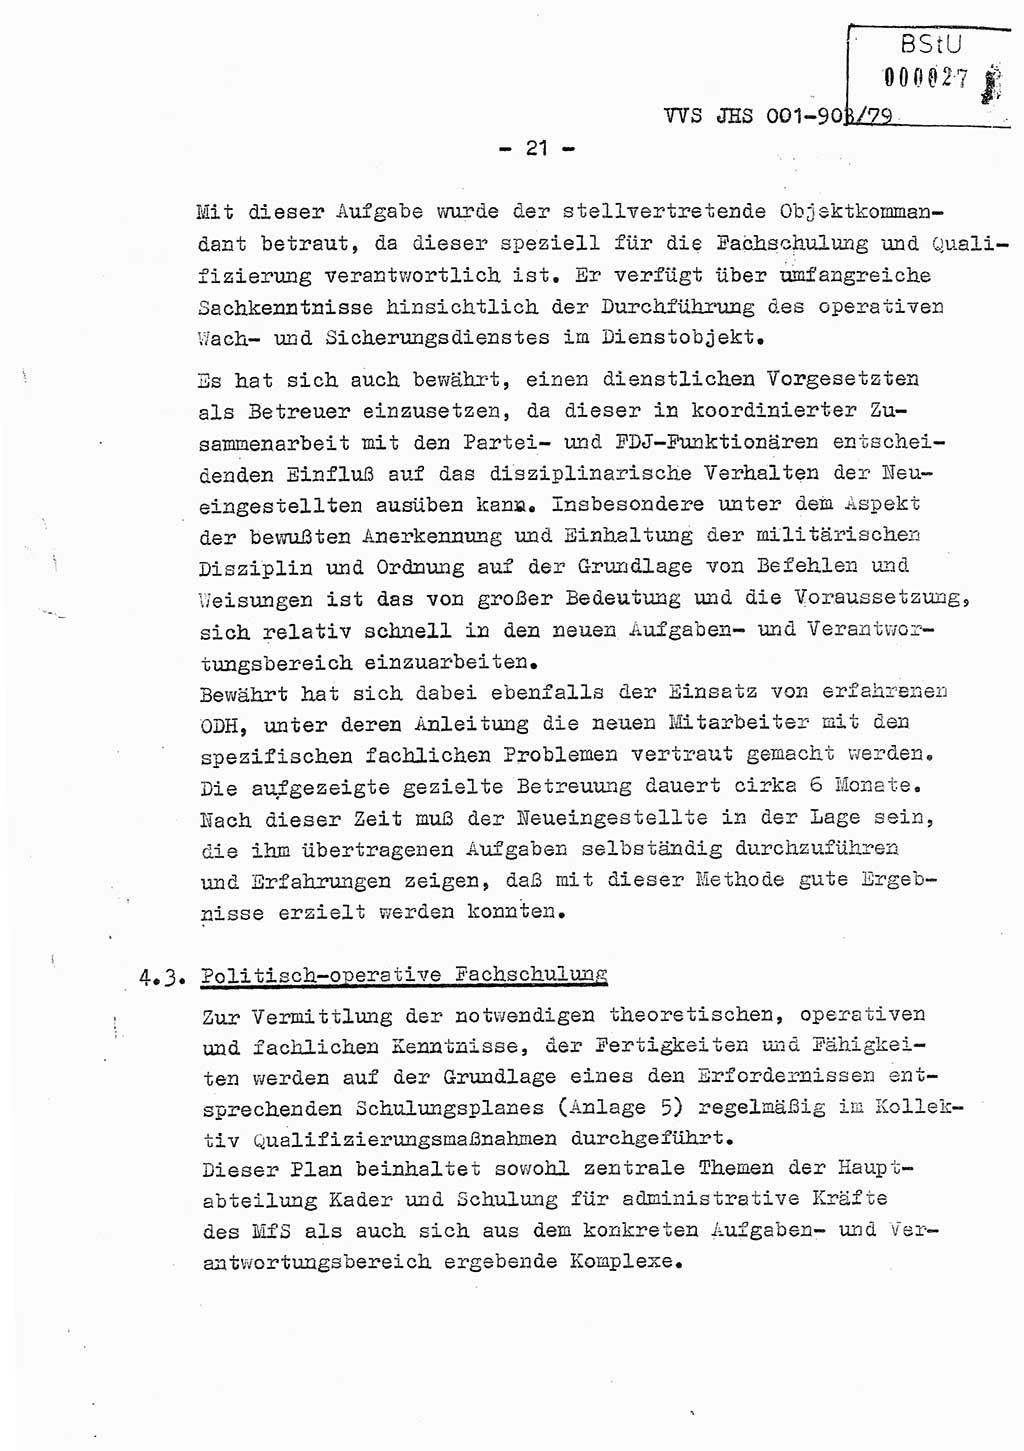 Fachschulabschlußarbeit Oberleutnant Jochen Pfeffer (HA Ⅸ/AGL), Ministerium für Staatssicherheit (MfS) [Deutsche Demokratische Republik (DDR)], Juristische Hochschule (JHS), Vertrauliche Verschlußsache (VVS) 001-903/79, Potsdam 1979, Seite 21 (FS-Abschl.-Arb. MfS DDR JHS VVS 001-903/79 1979, S. 21)